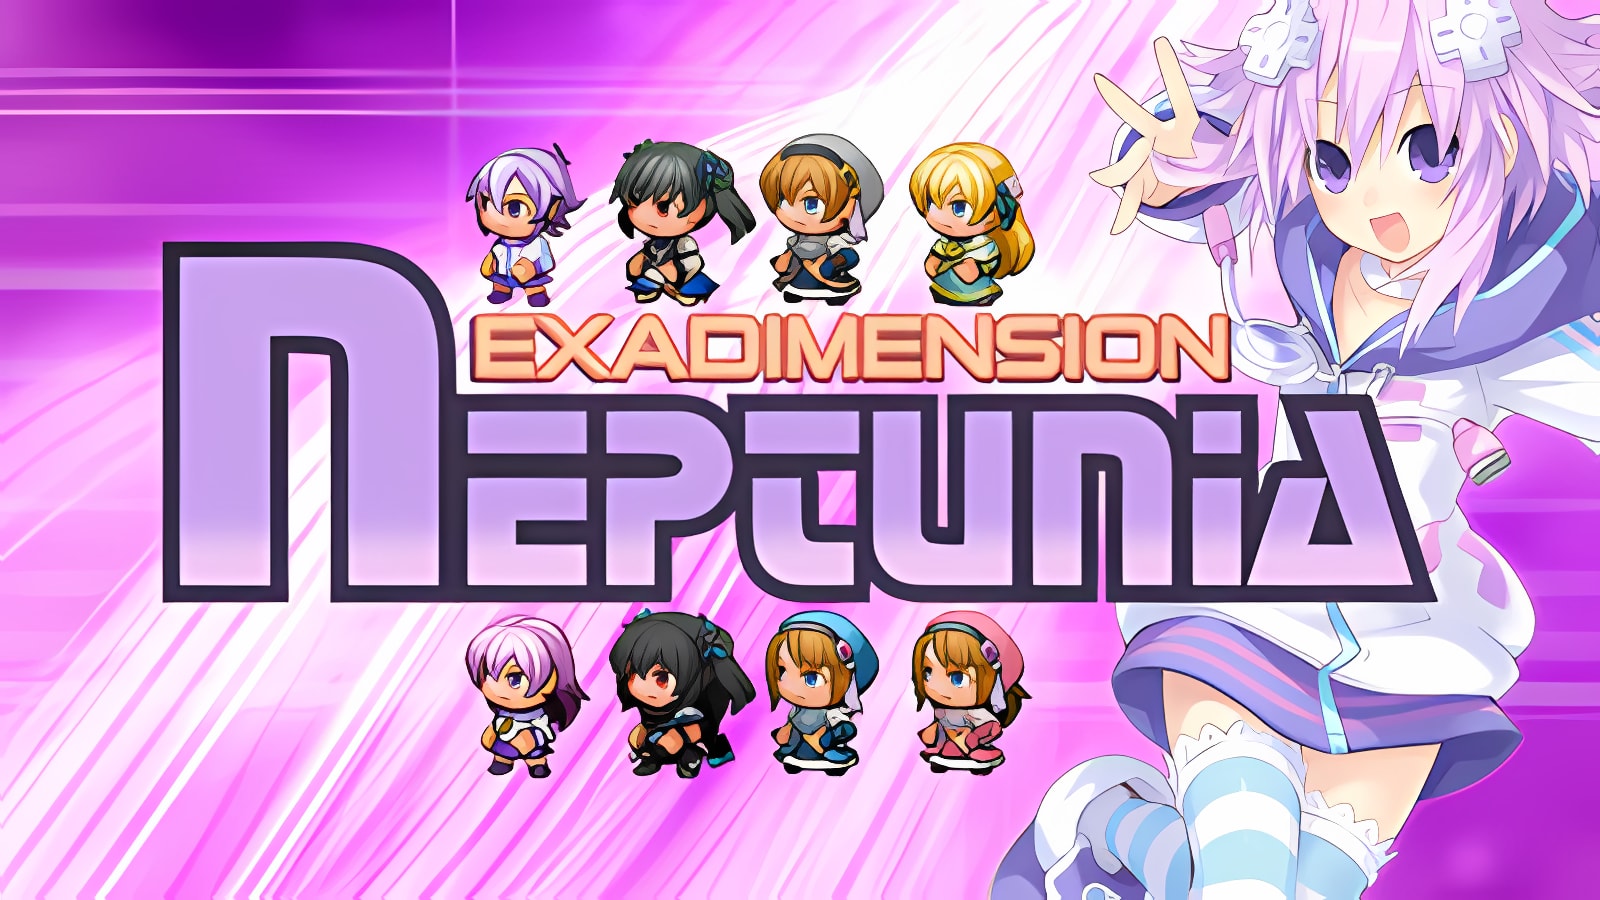 Herunterladen Exadimension Neptunia Installieren Sie Neueste App Downloader